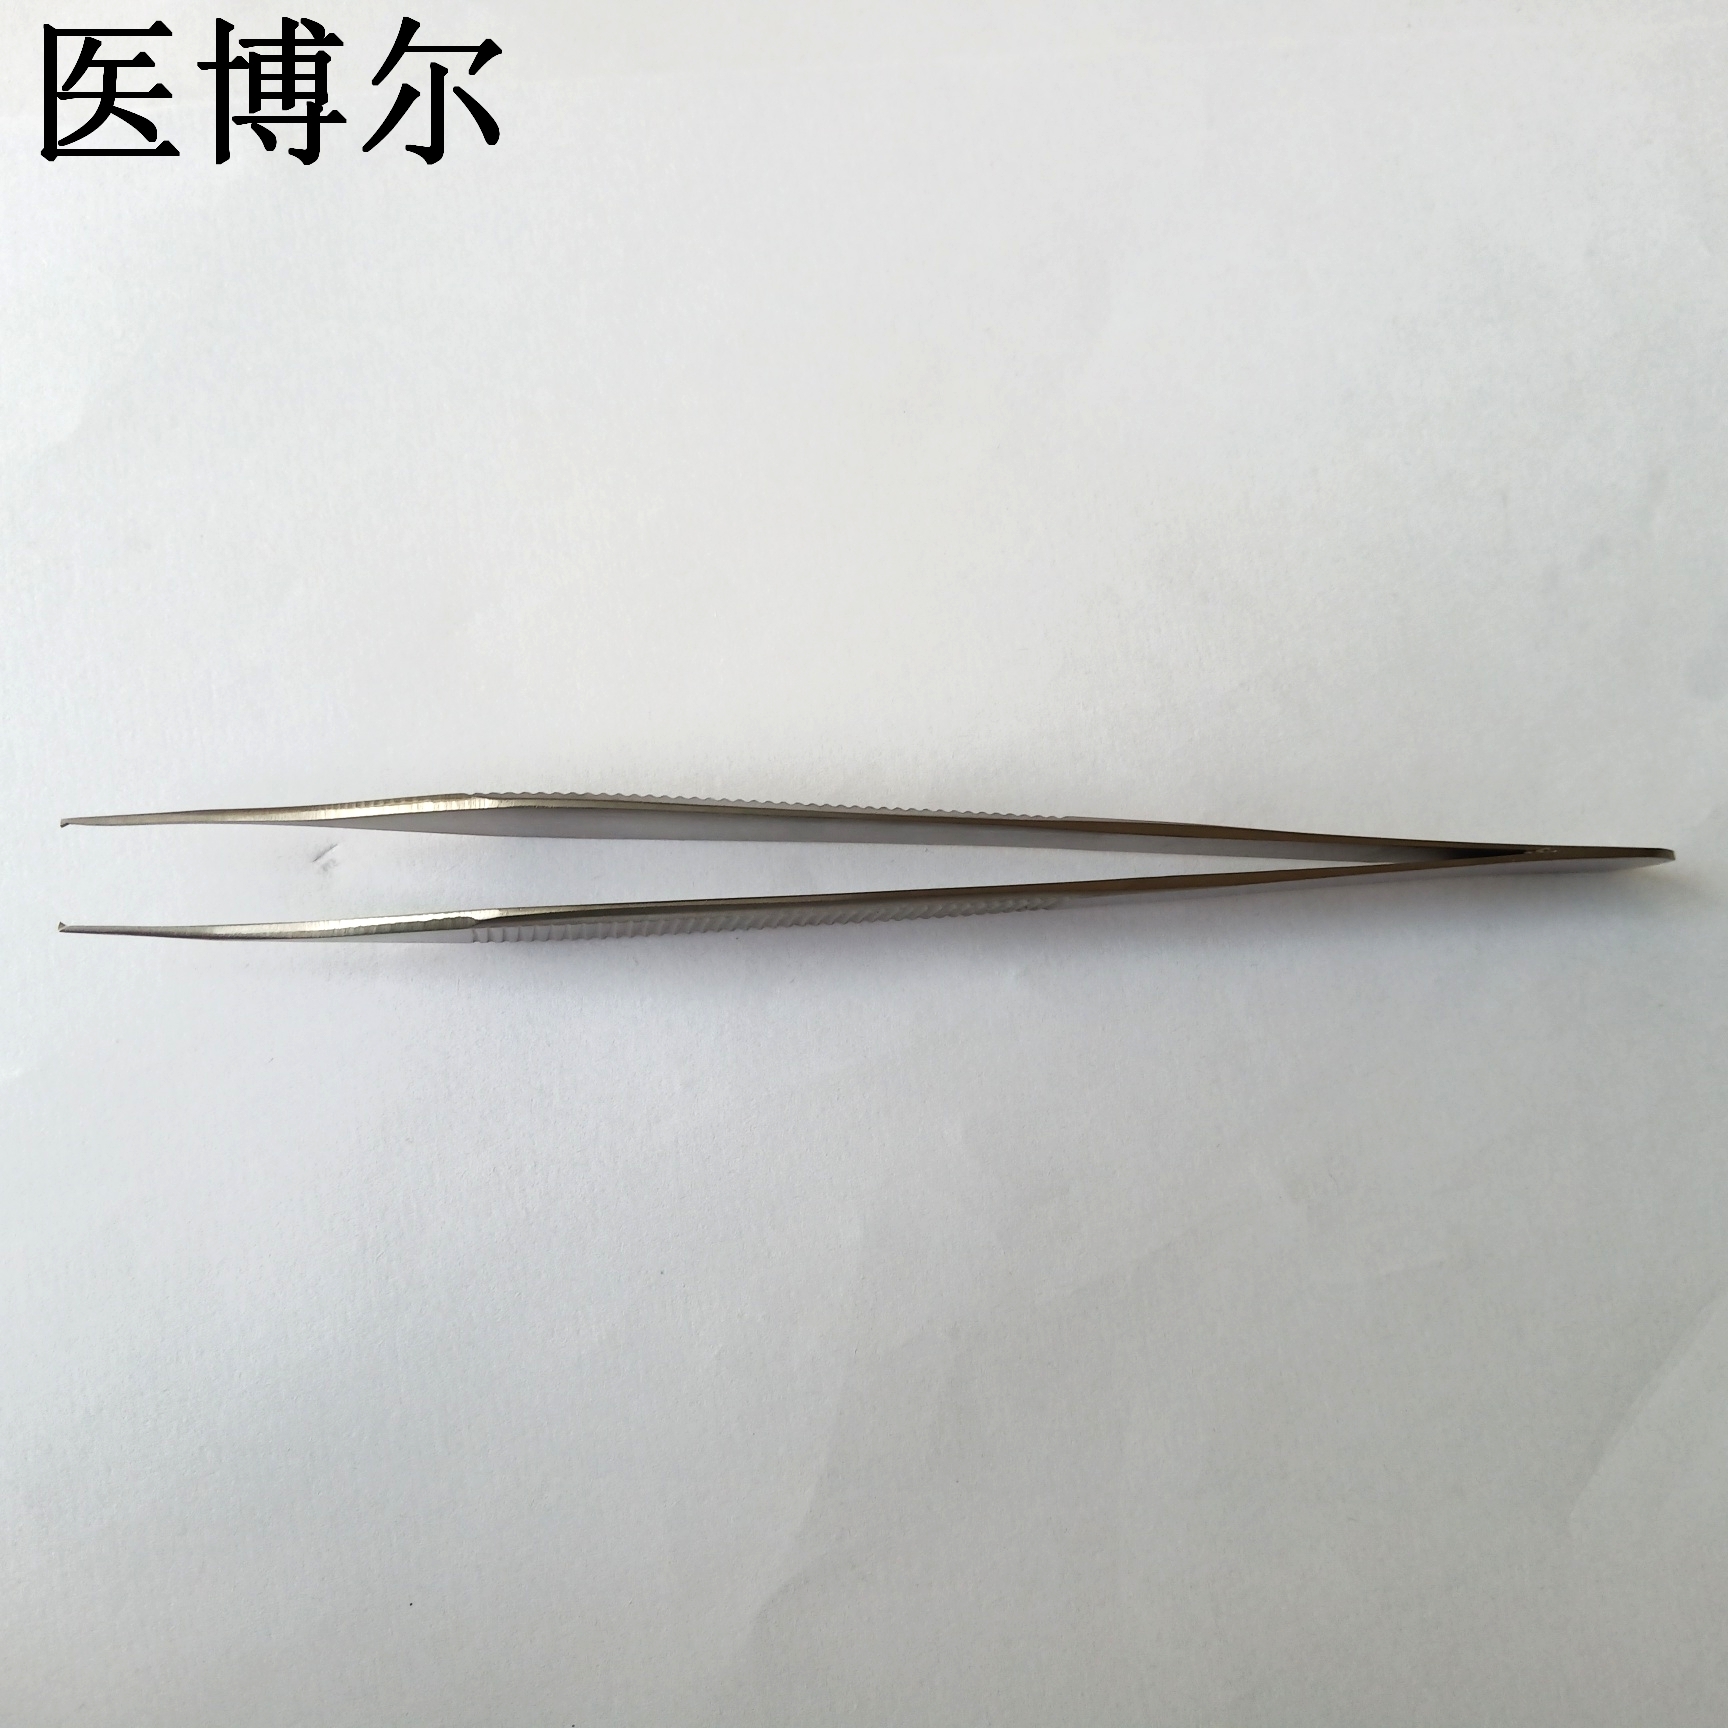 14cm整形镊0 (8)_看图王.jpg